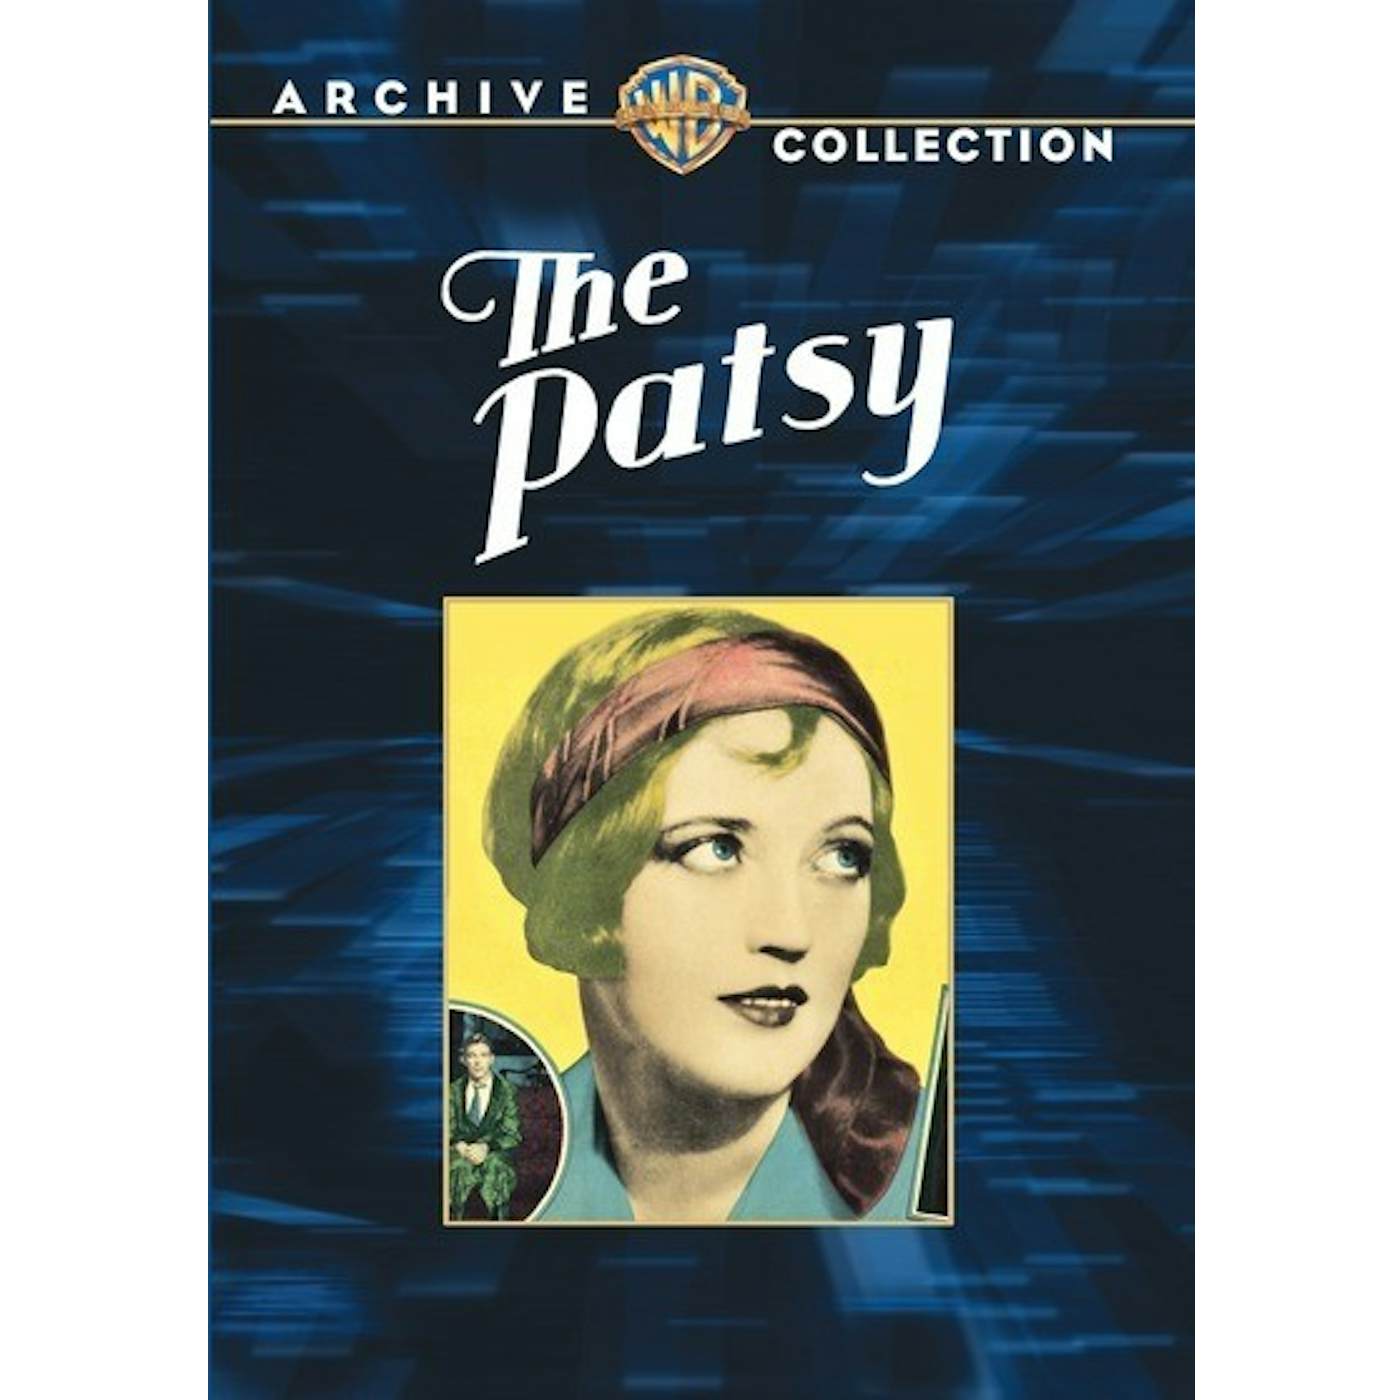 PATSY DVD